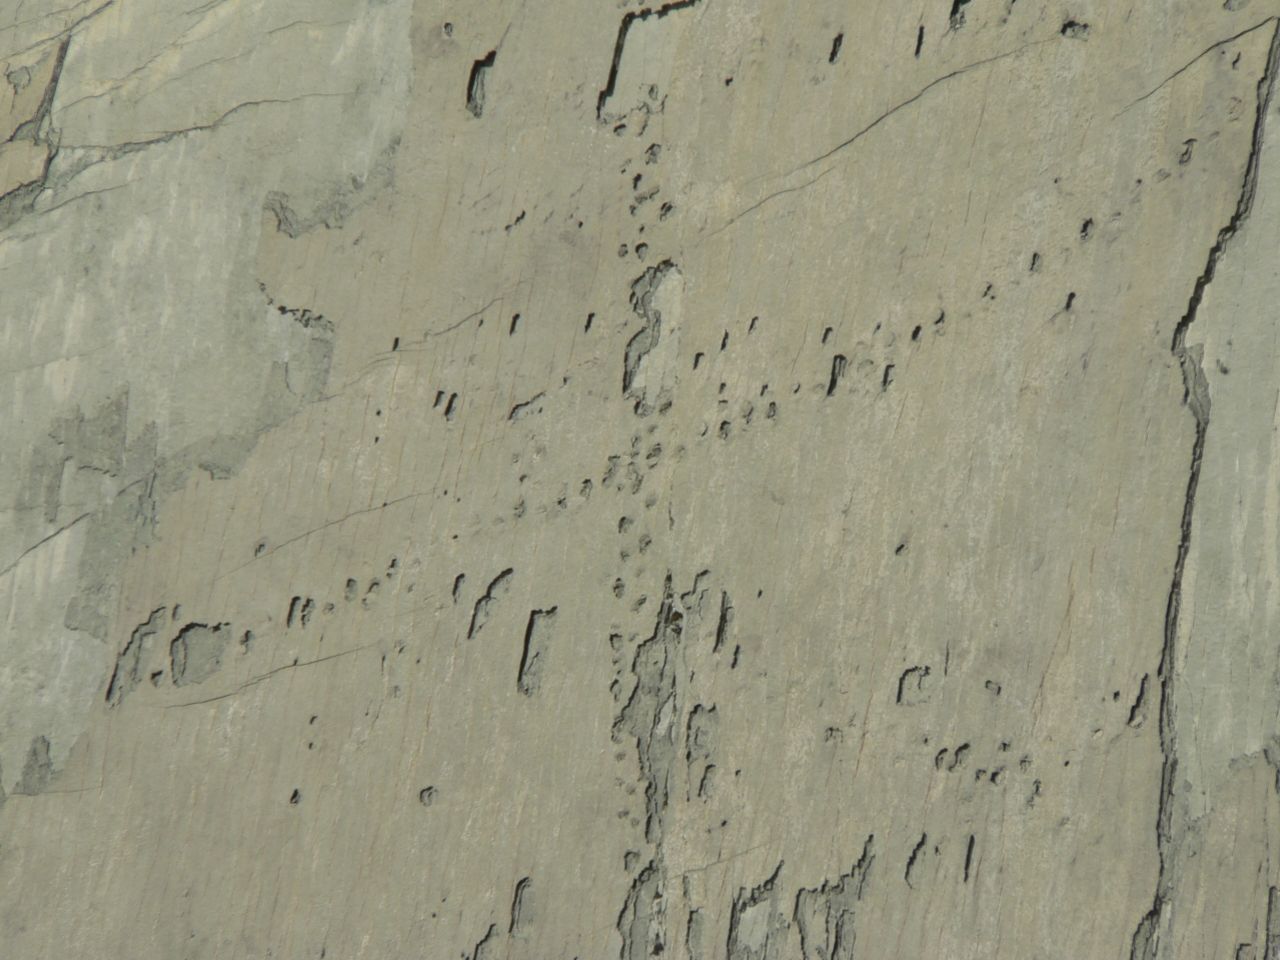 รอยเท้าบนผนัง: ไดโนเสาร์ปีนหน้าผาในโบลิเวียจริงหรือ? 4